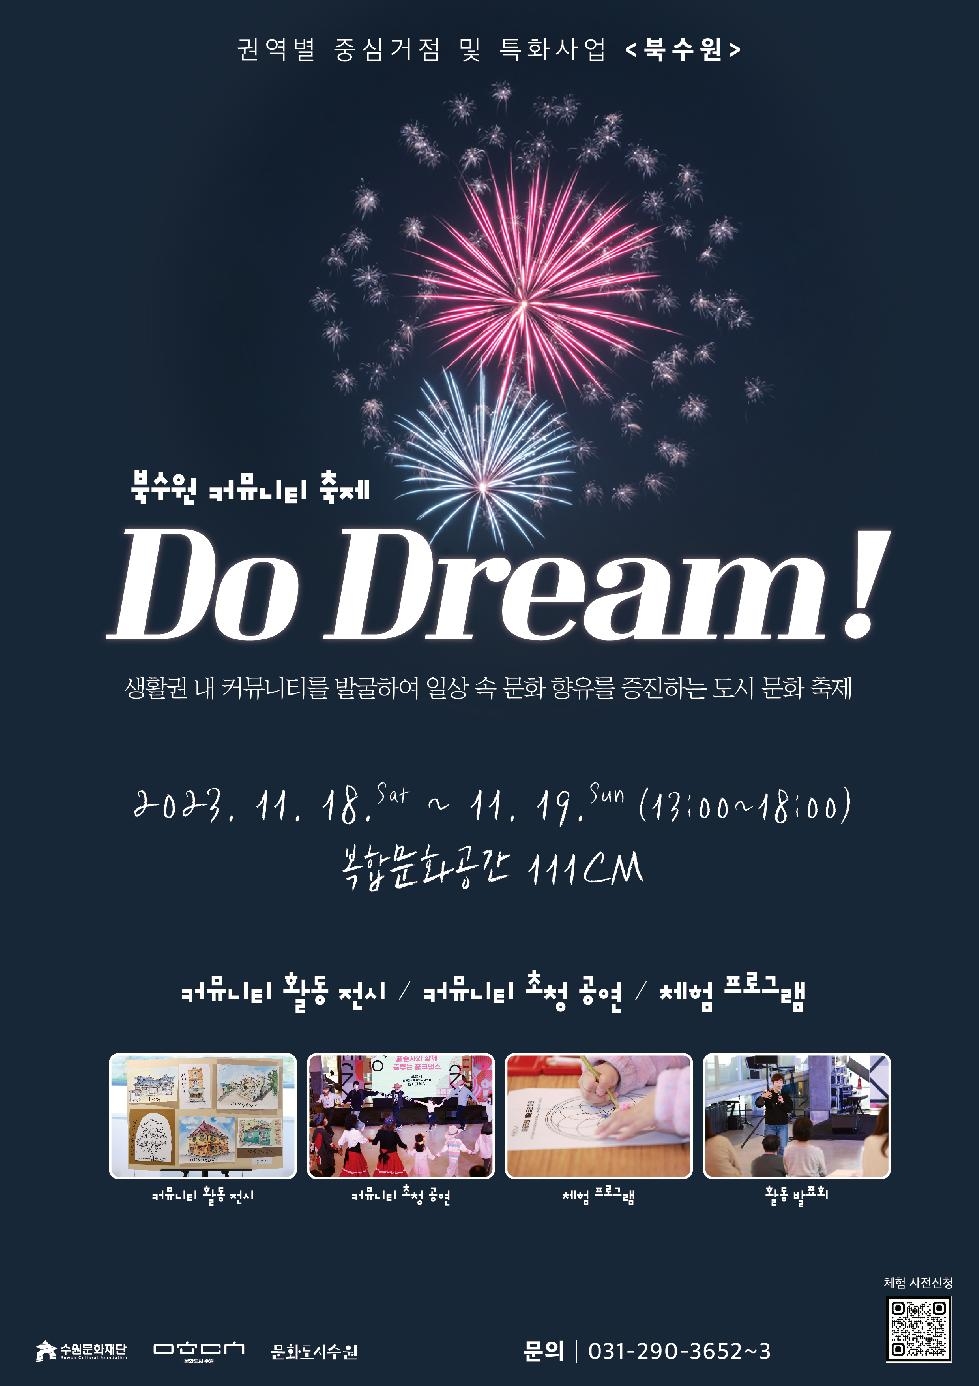 북수원 Do Dream! 커뮤니티 축제